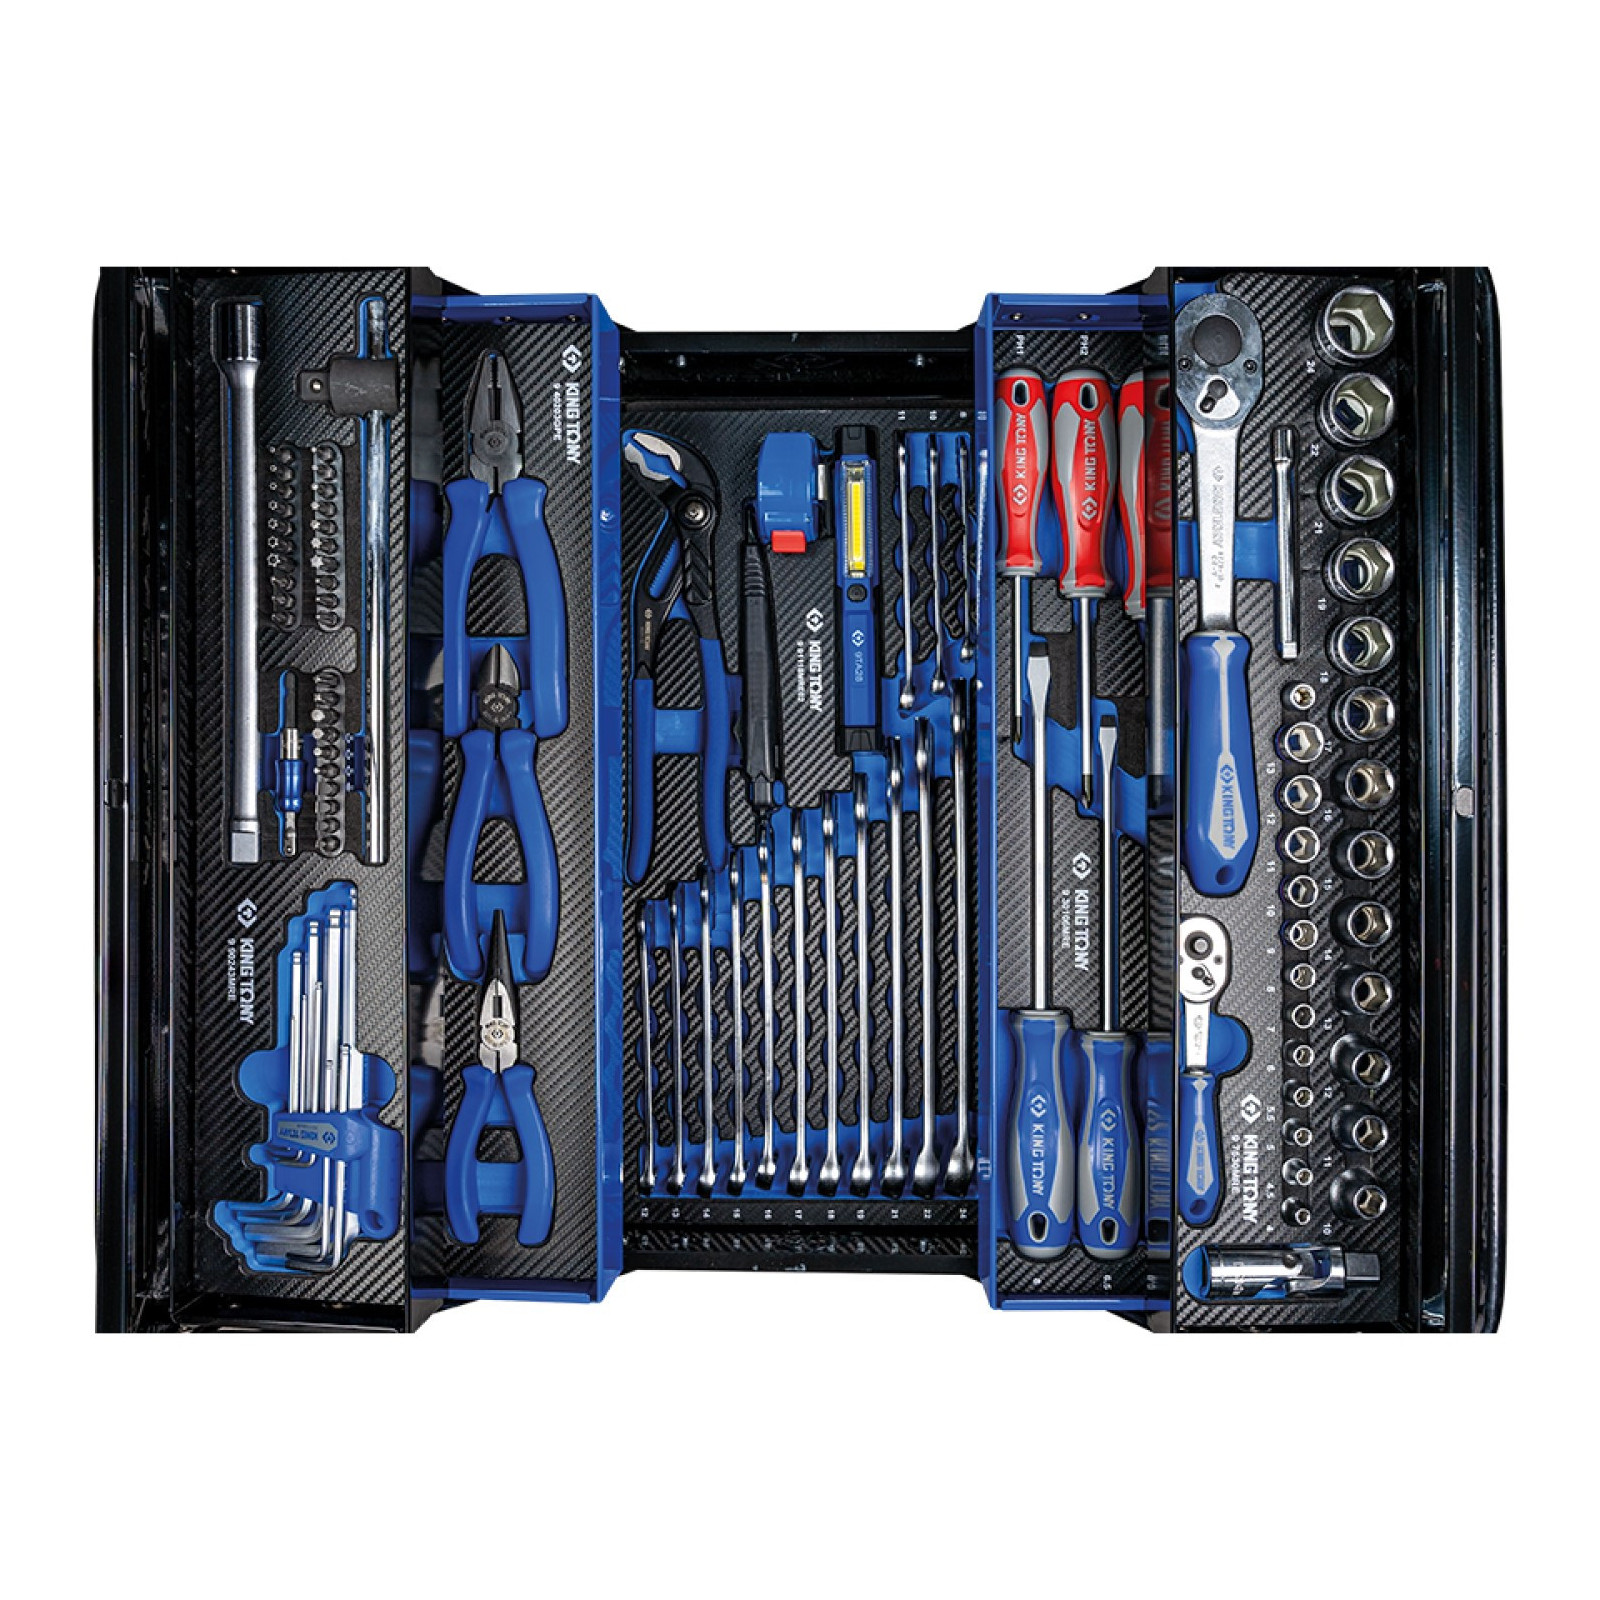 Caisse à outils complète - 63 pièces - 902062MR02